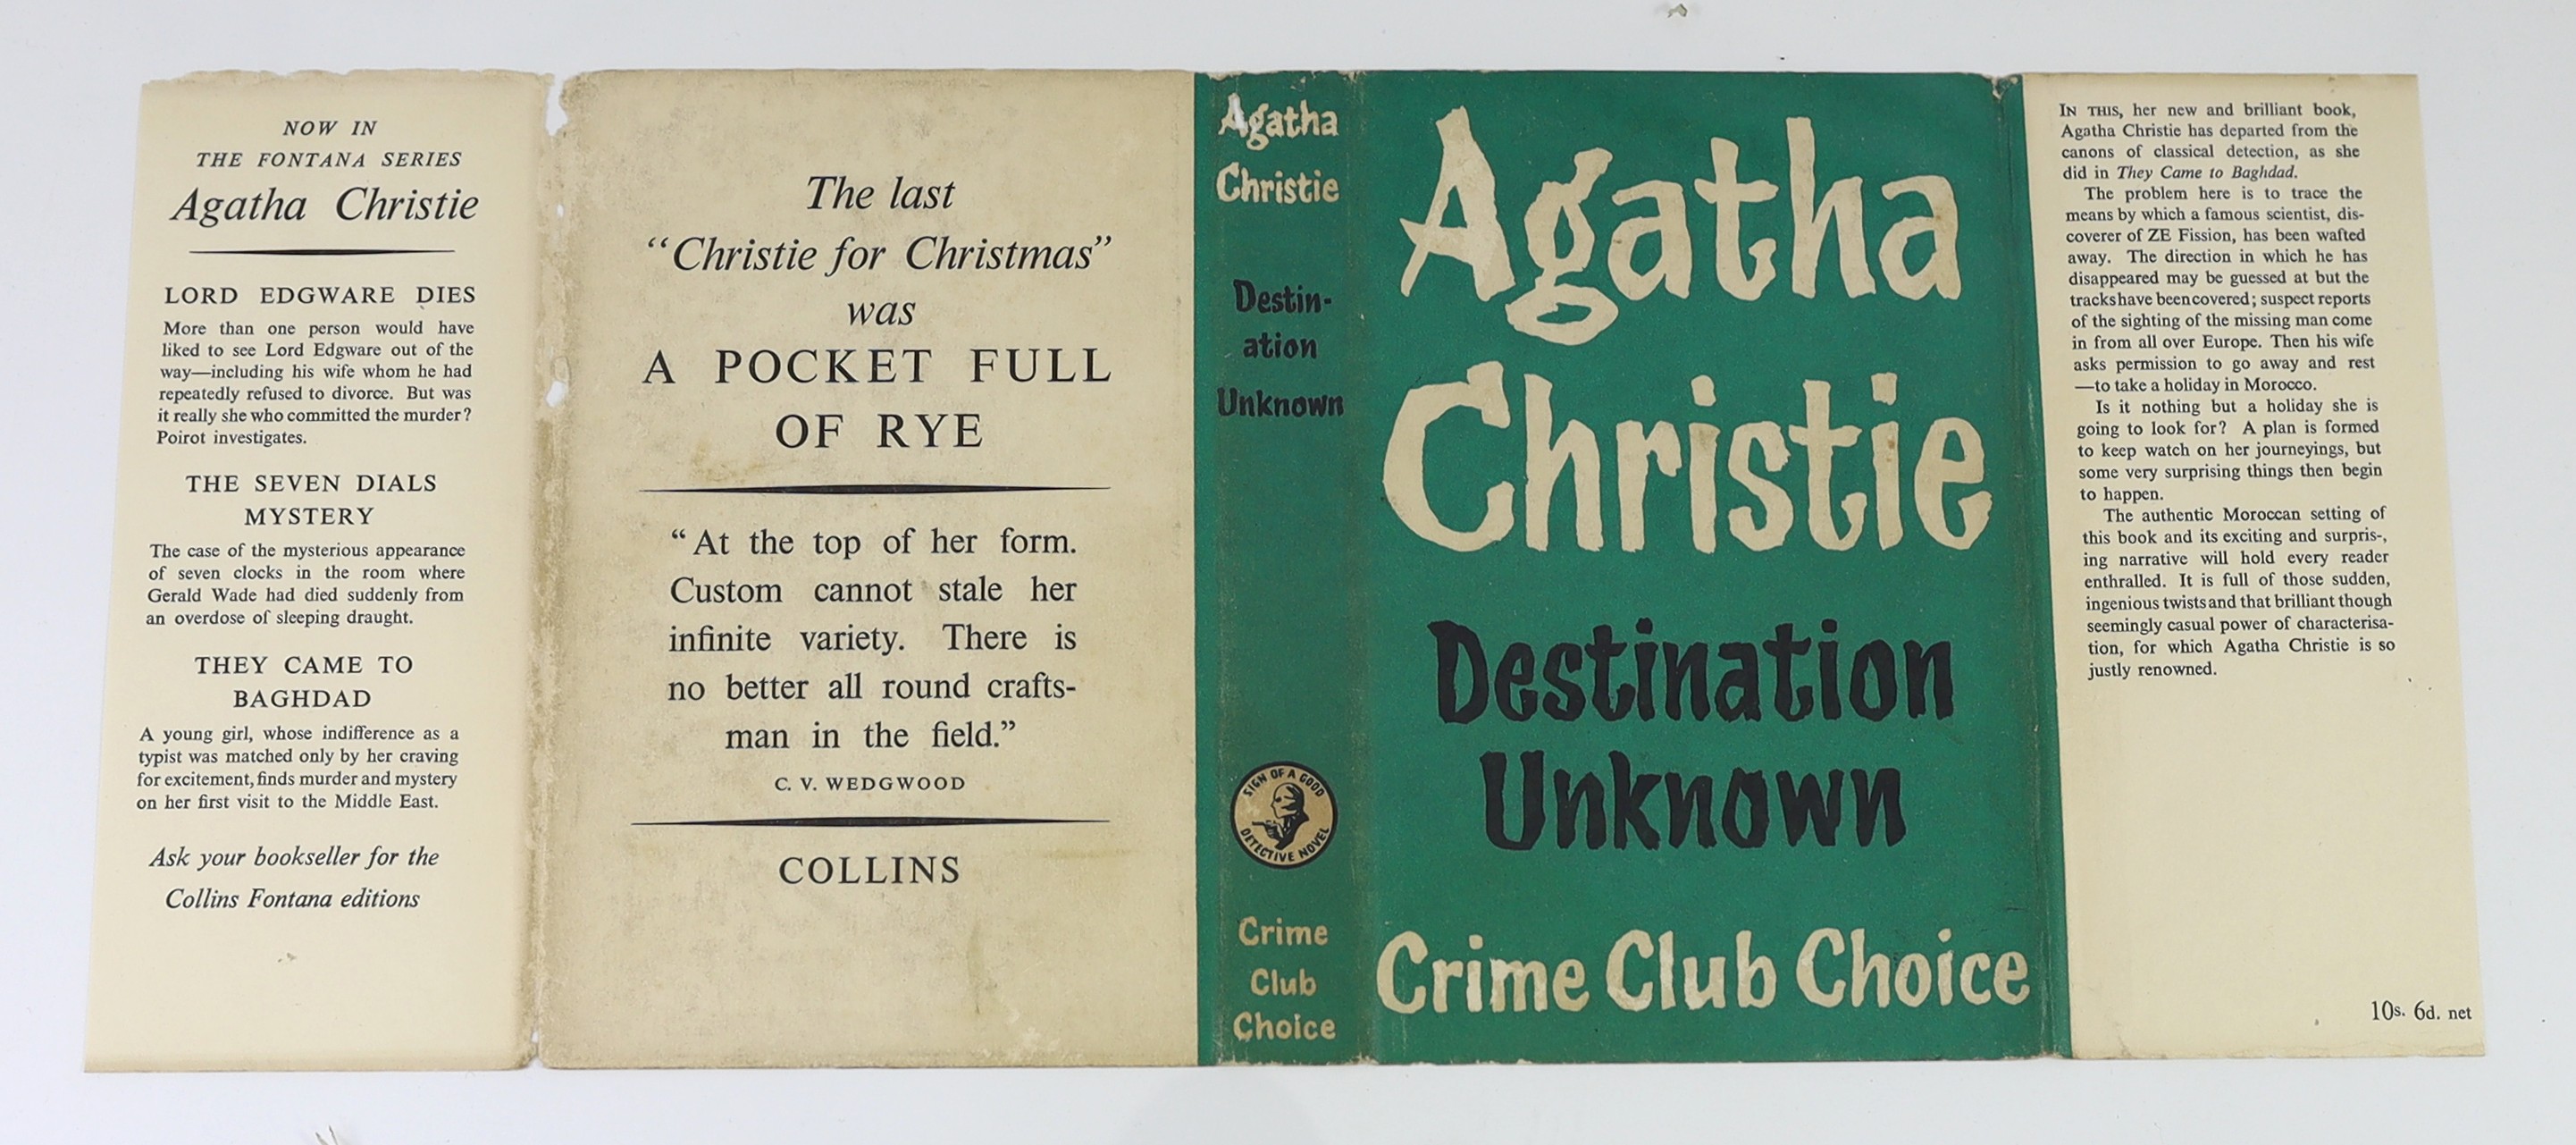 Christie, Agatha - Destination Unknown, 1st edition